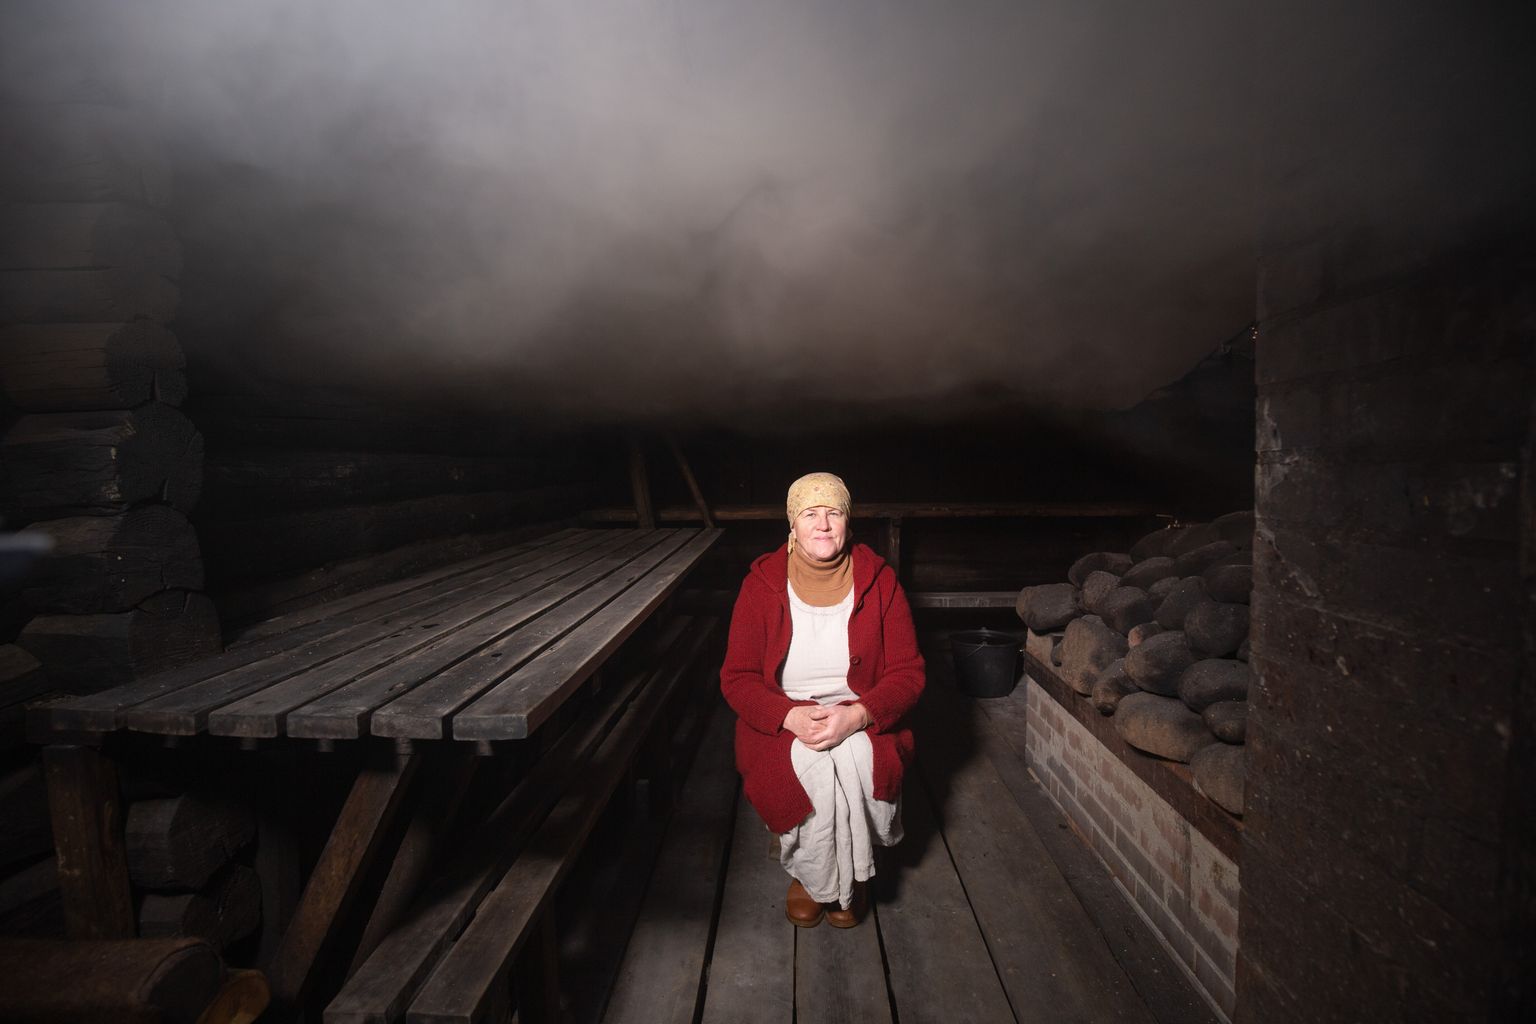 Mooska suitsusaunatalu perenaine Eda Veeroja peab pärimust ja saunakultuuri väga oluliseks ja tutvustab seda meelsasti oma külalistele. Foto: Elmo Riig